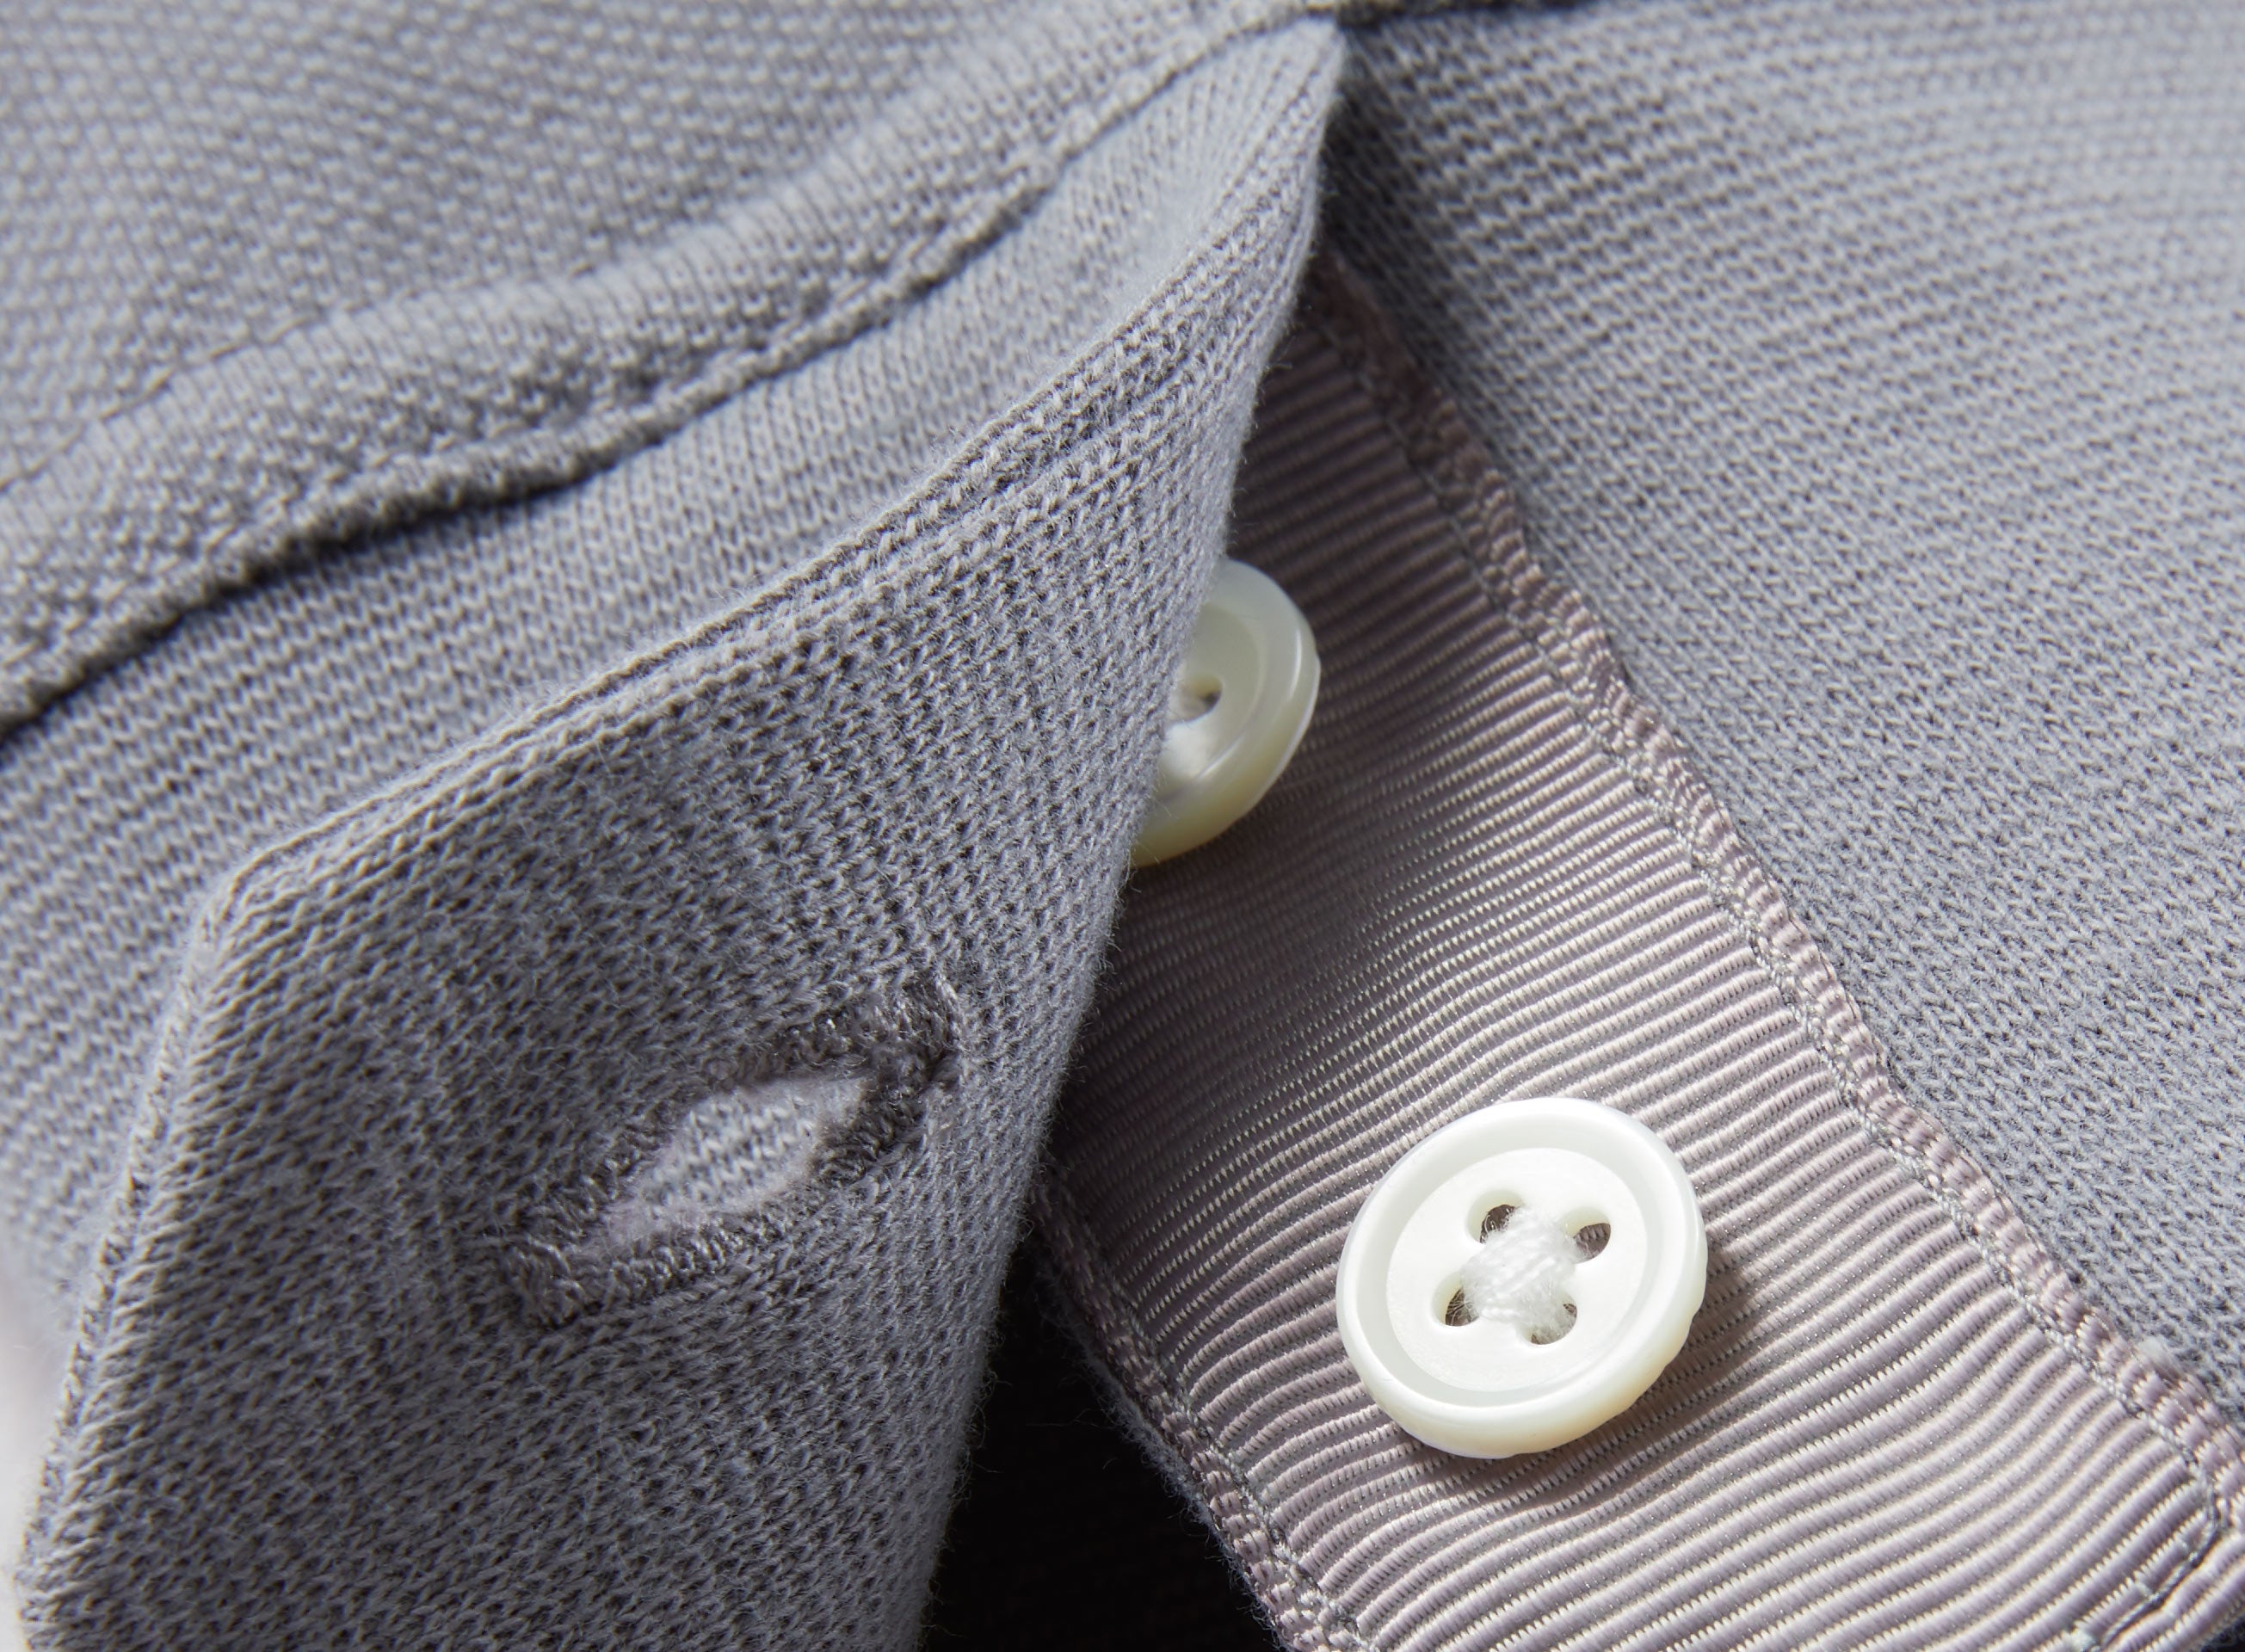 rockridge polo shirt detail